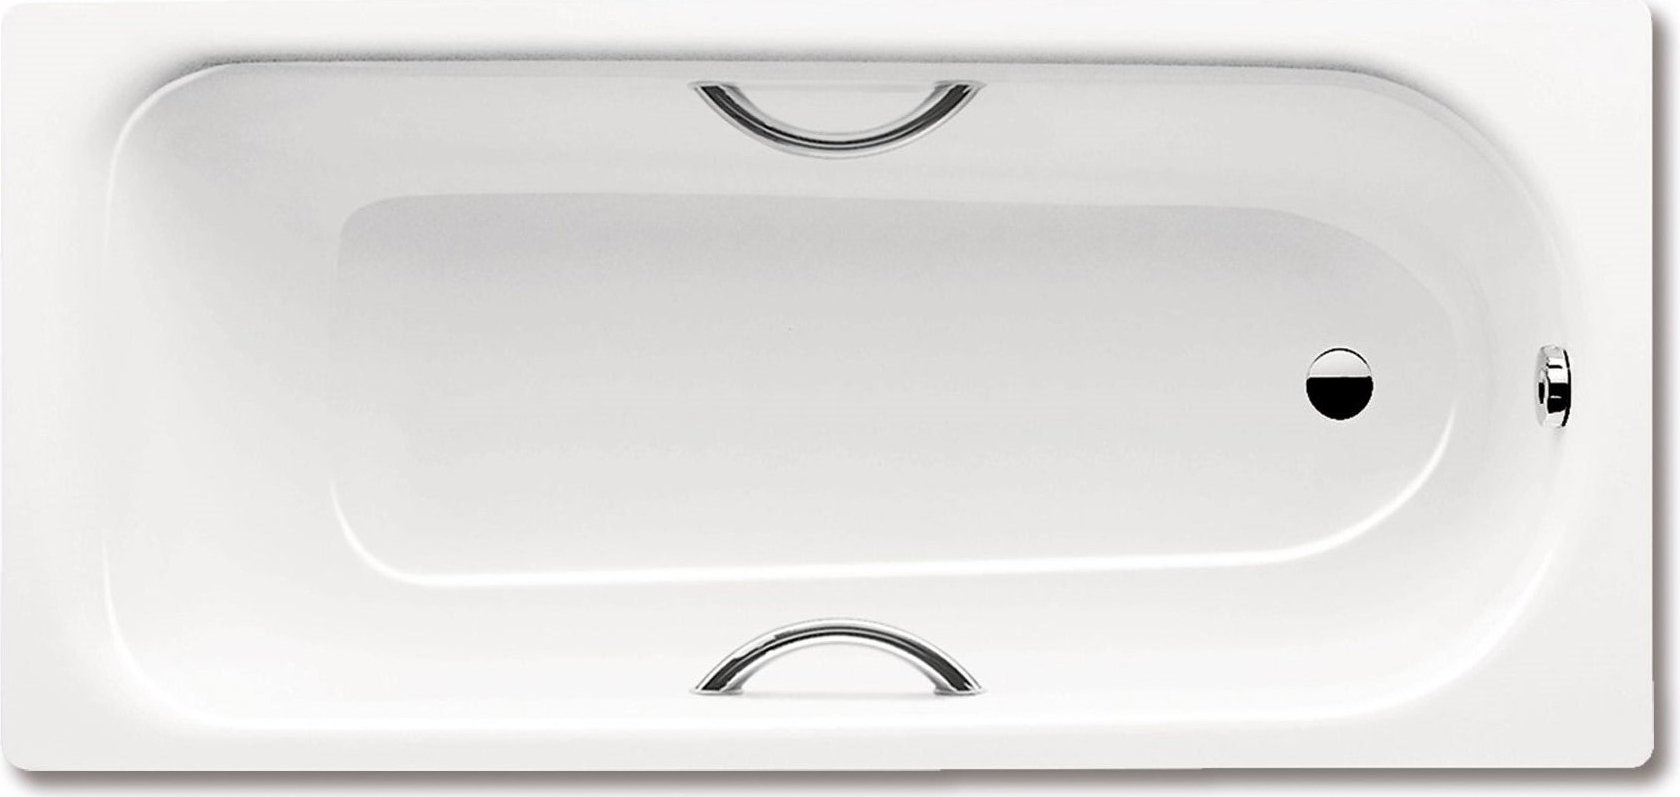 Стальная ванна Kaldewei Advantage Saniform Plus Star 337 с покрытием Easy-Clean 180x80, белый, сталь  - купить со скидкой